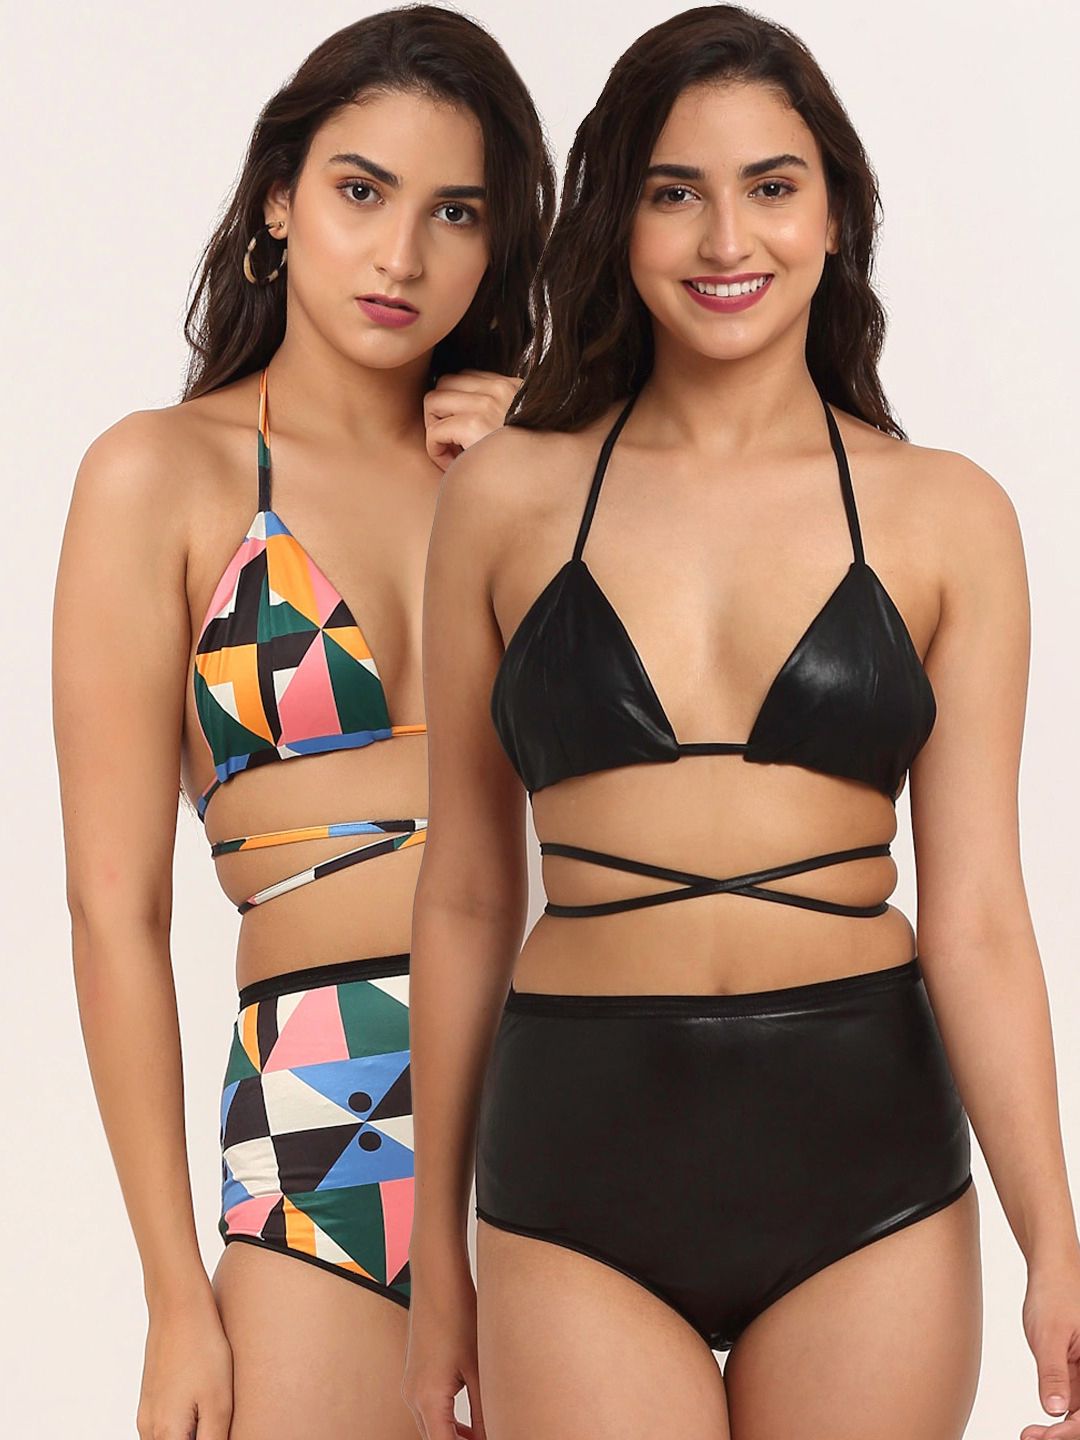 EROTISSCH Women Pack of 2 Black & Multicolored Swim Tops Price in India